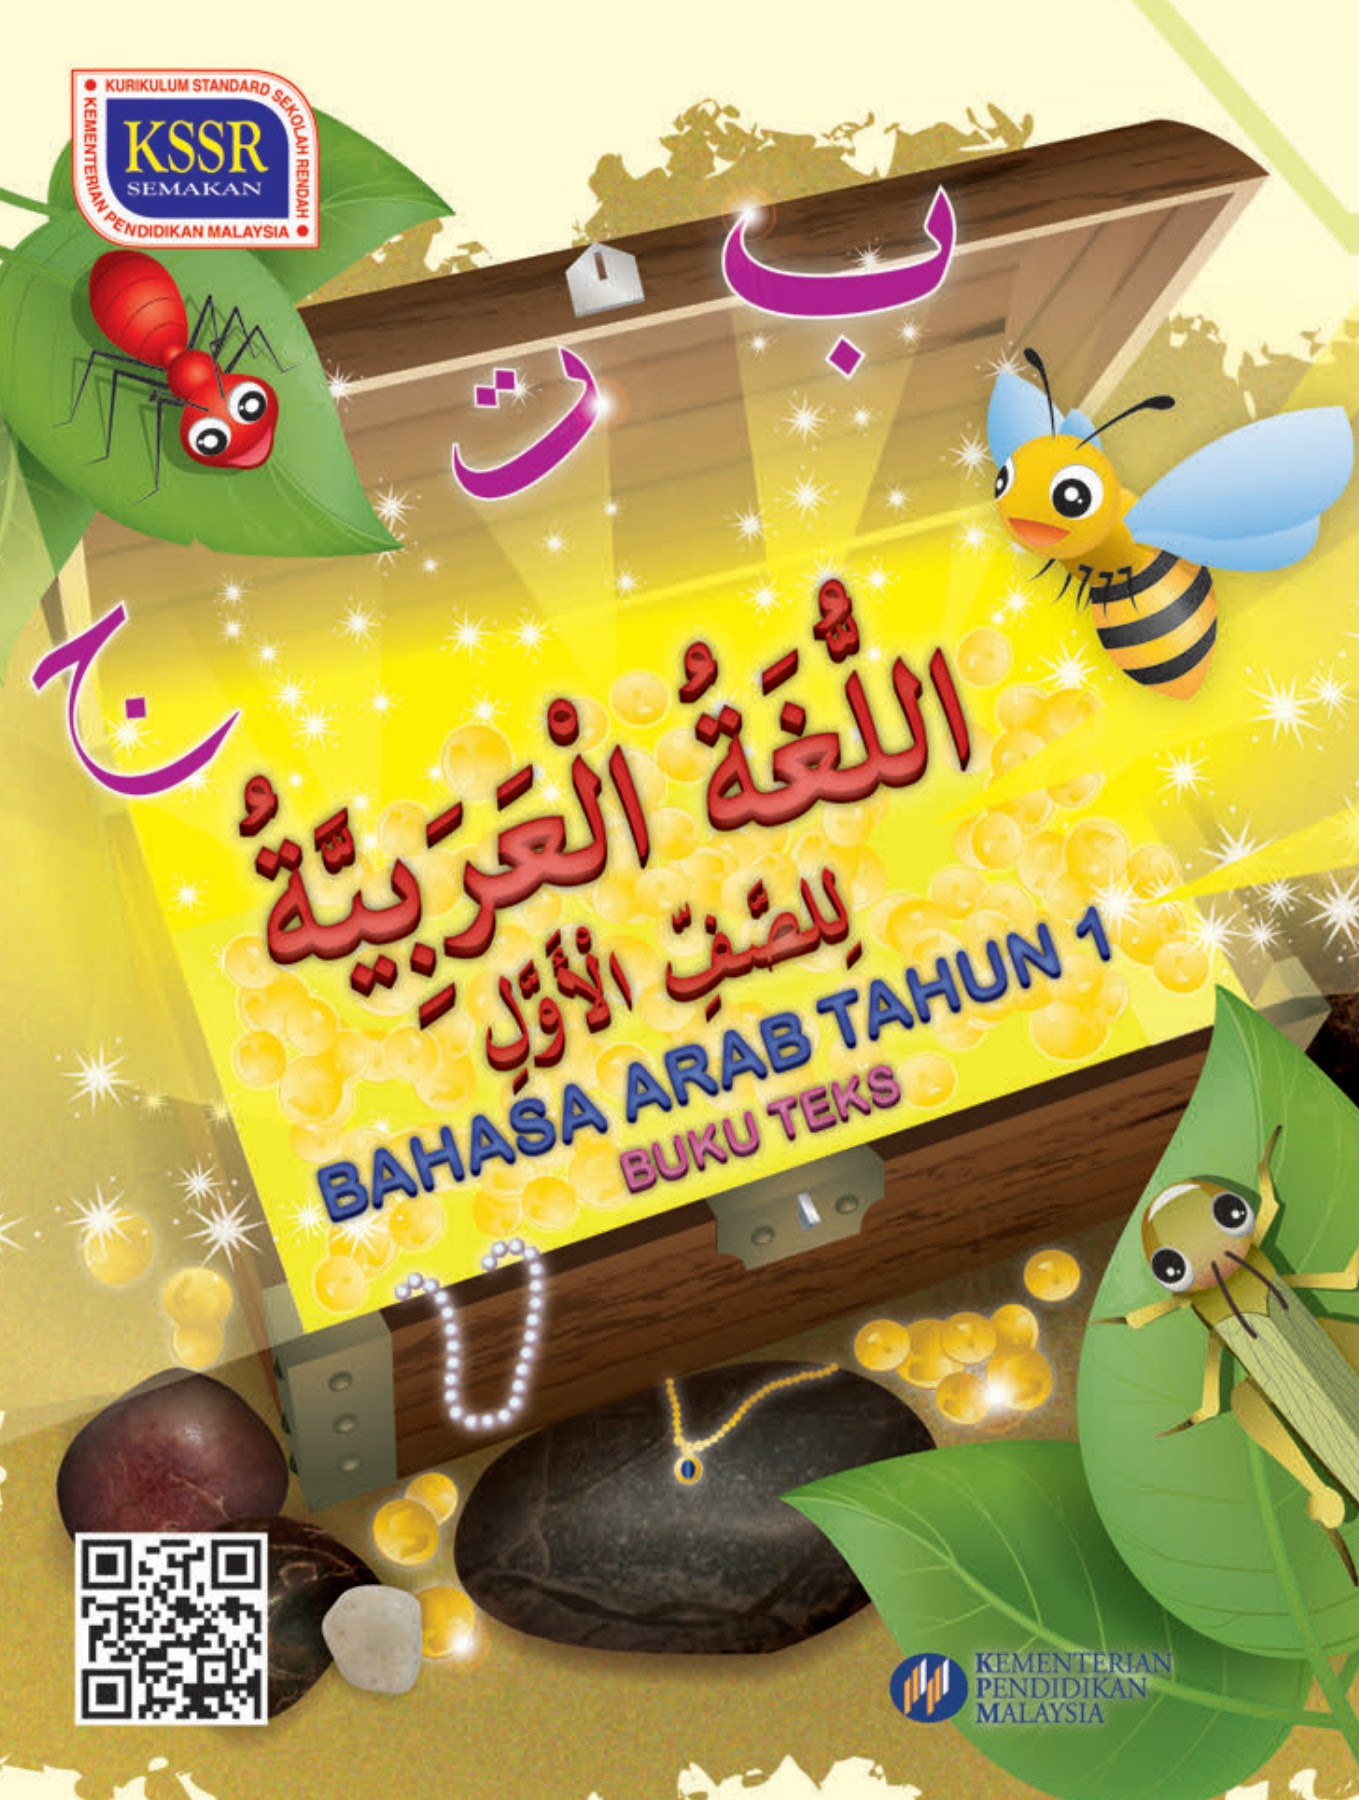 Buku Teks Bahasa Arab Tahun 1 / Dari 3 pembagian kata yang ada dalam